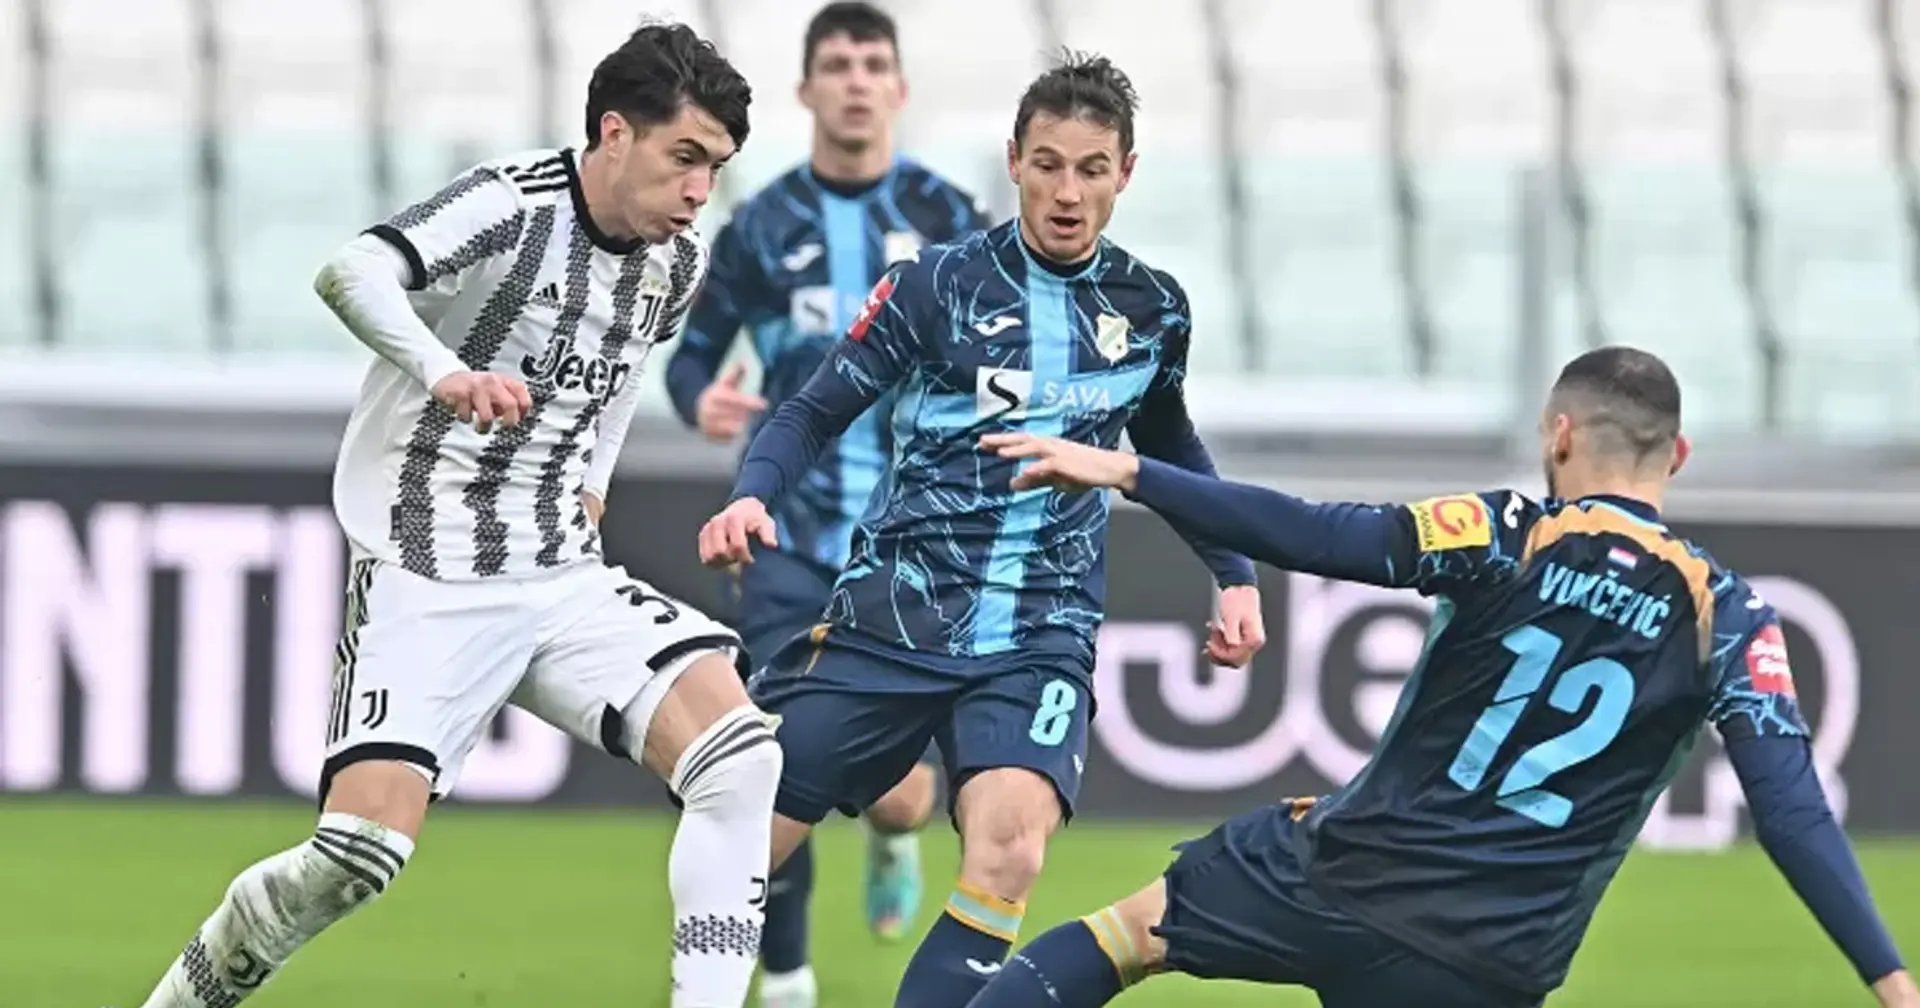 La Juventus recupera 4 reduci dal Qatar e supera di misura il Rijeka: Conferme dai giovanissimi, male 2 "anziani"